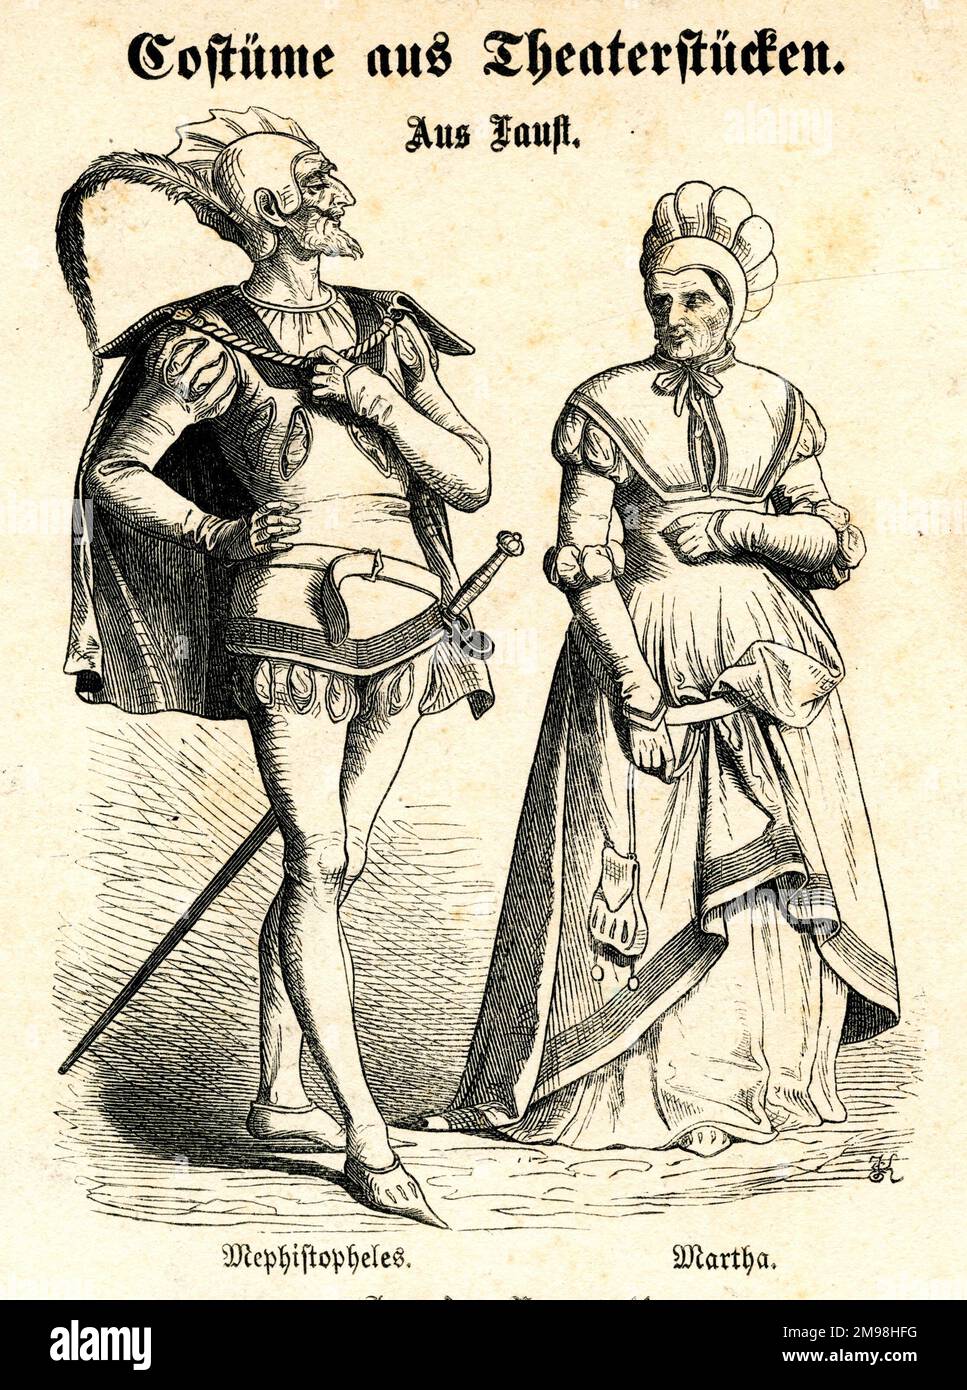 Deutsches Theaterkostüm - Mephistopheles und Martha, Figuren aus der klassischen deutschen Faust-Legende. Stockfoto